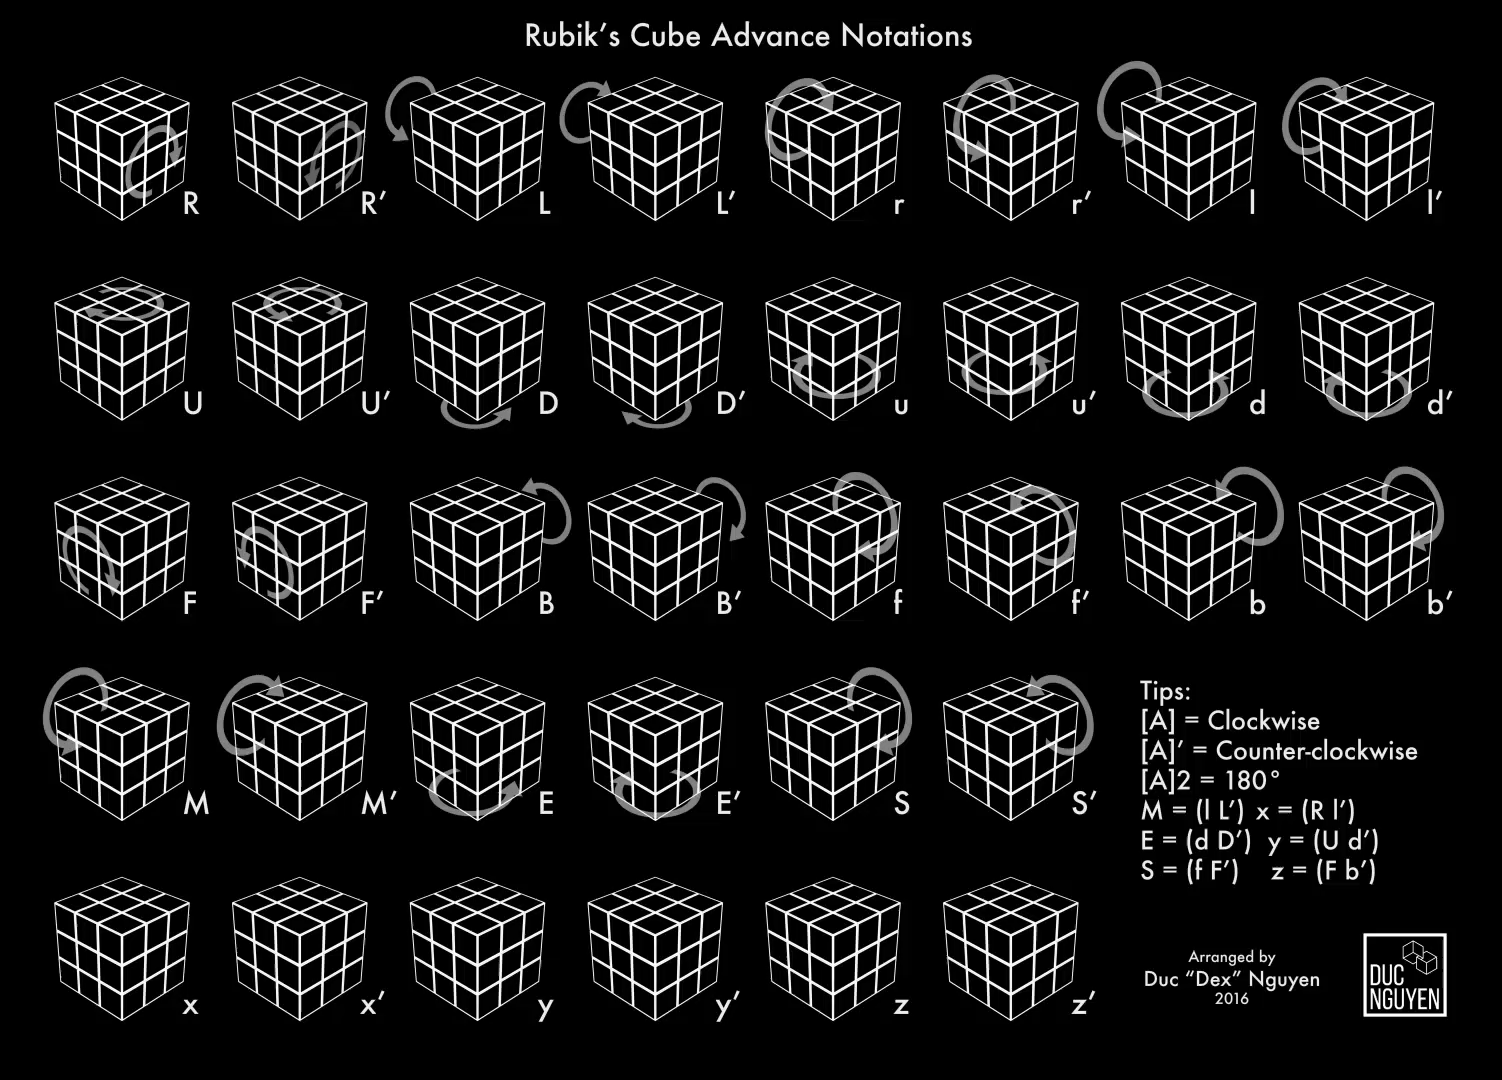 Кубик рубик буквы. Язык вращения кубика Рубика 3х3 перехваты. Обозначения кубика Рубика 3х3. Язык движений кубика Рубика 3х3. Язык вращение кубика Рубика 3x3.